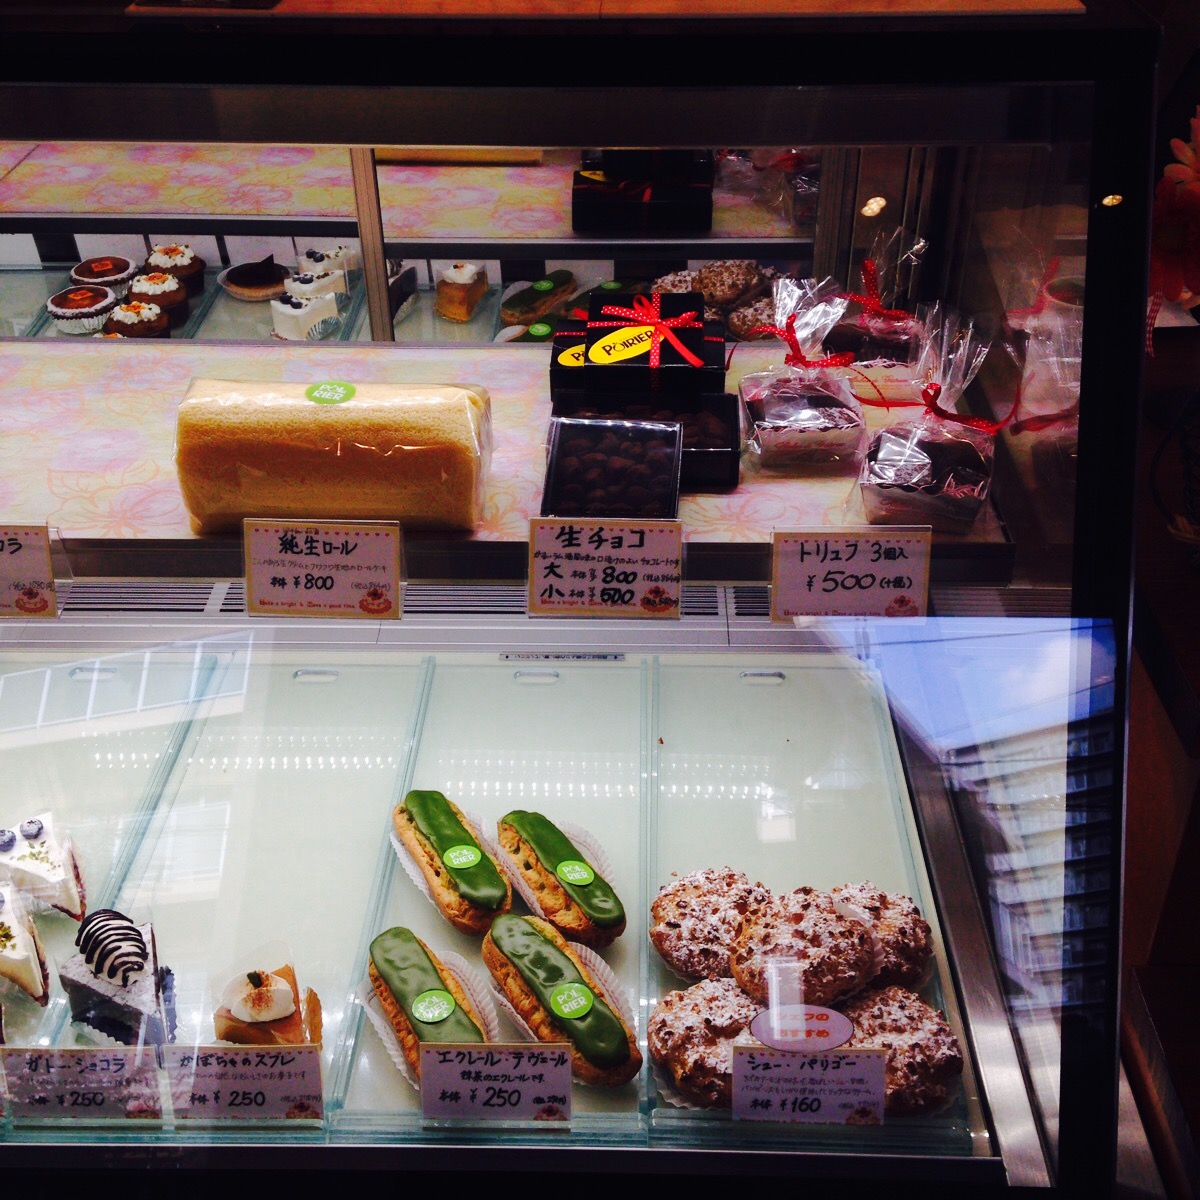 本格的なスイーツを堪能できる隠れ家洋菓子店『POIRIER』(千葉県白井市)